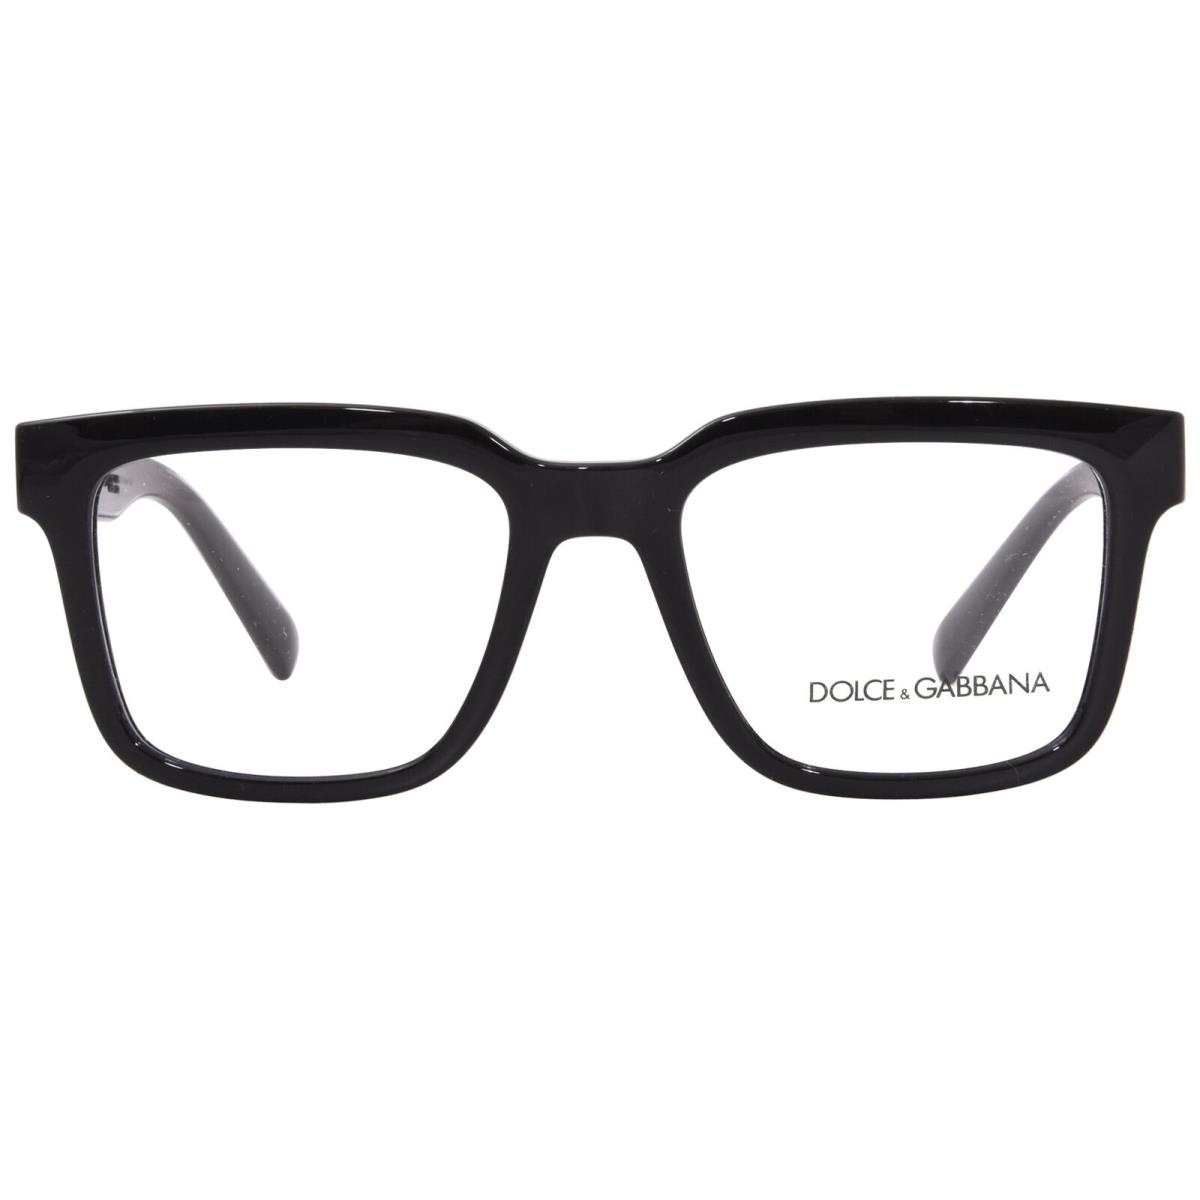 Dolce Gabbana DG5101 501 Eyeglasses Men`s Black Full Rim Square Shape 52mm